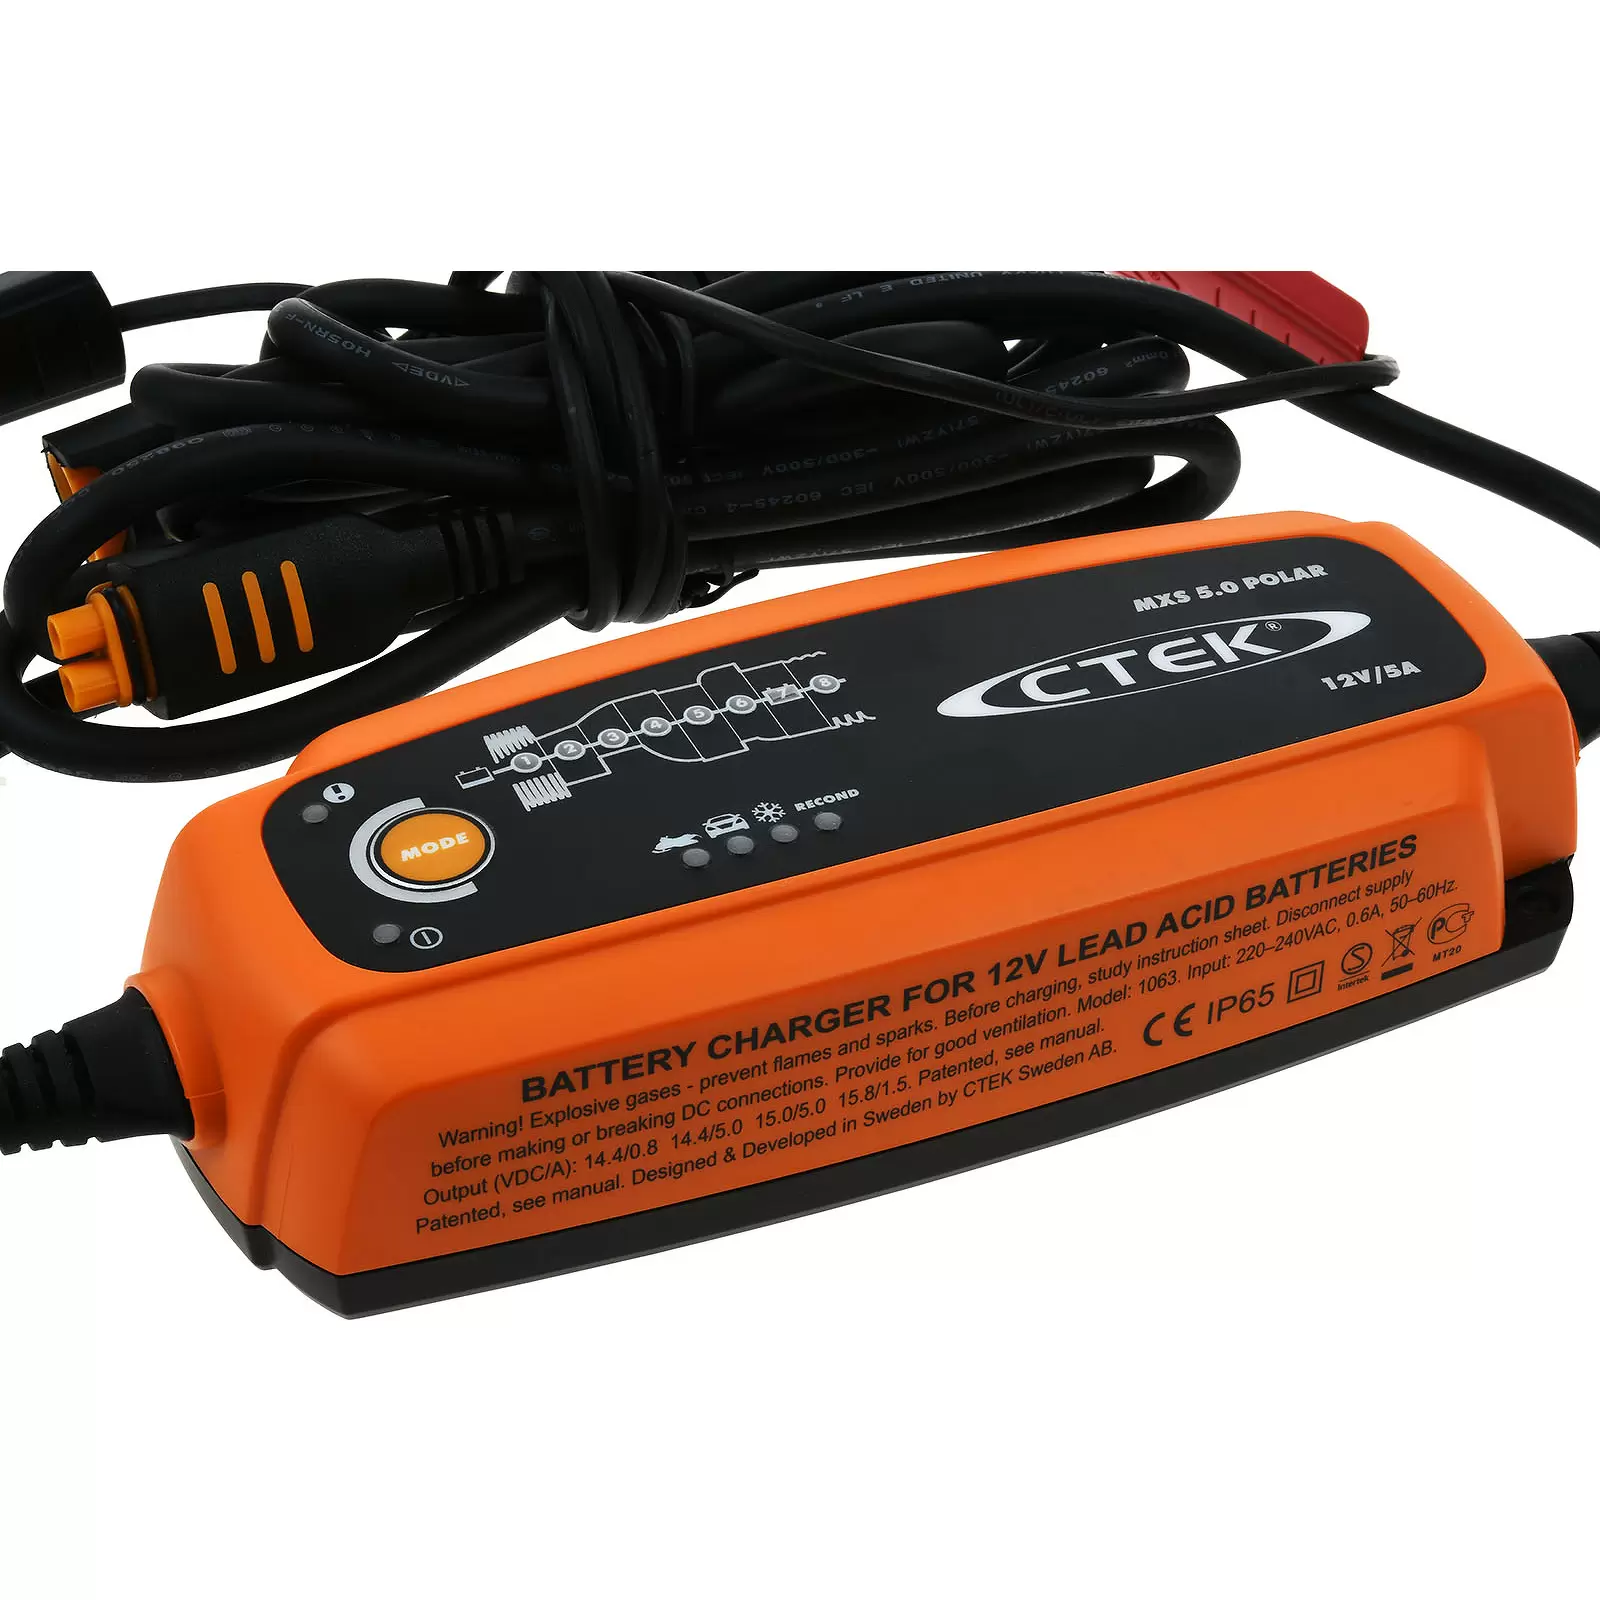 CTEK MXS 5.0 Polar (56-855) Batterie-Ladegerät, vollautomatisch u.a. für Auto, Boot u.a. 12V 5A EU